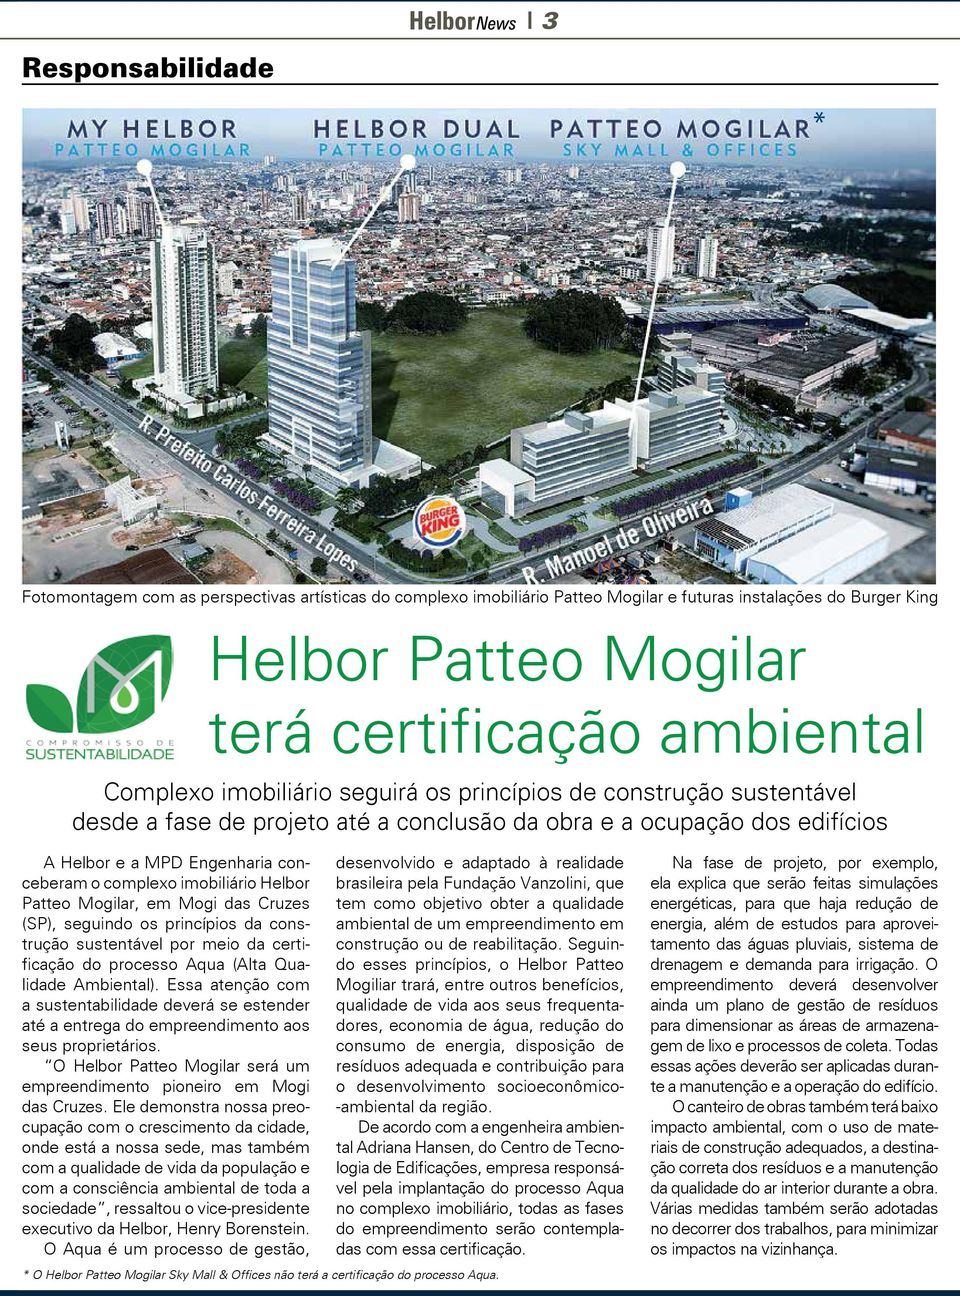 Helbor Patteo Mogilar, em Mogi das Cruzes (SP), seguindo os princípios da construção sustentável por meio da certificação do processo Aqua (Alta Qualidade Ambiental).